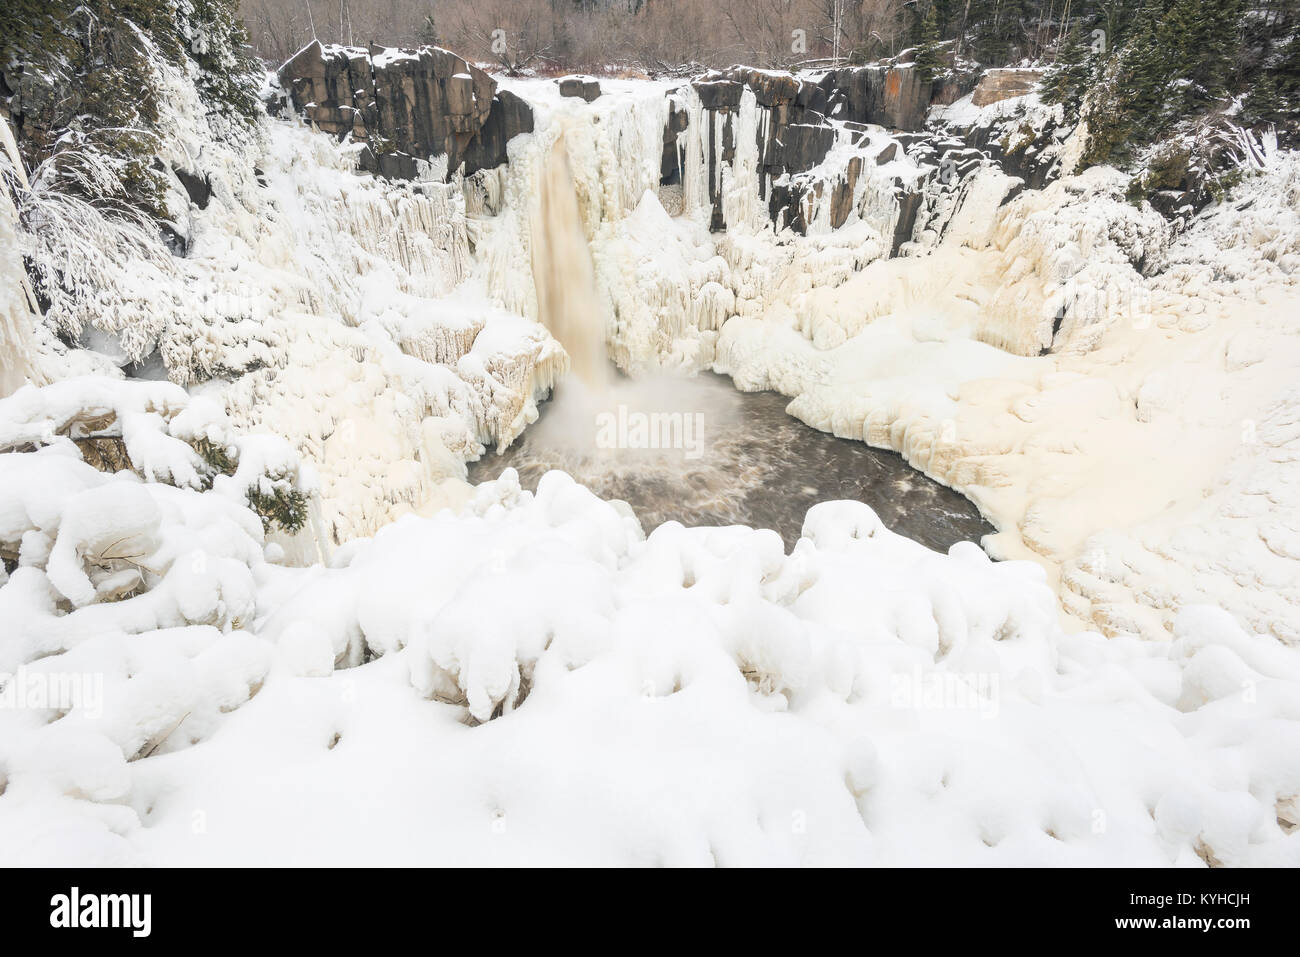 Teilweise gefroren Taube fällt. Grand Portage State Park, MN, USA, Ende Dezember, von Dominique Braud/Dembinsky Foto Assoc Stockfoto